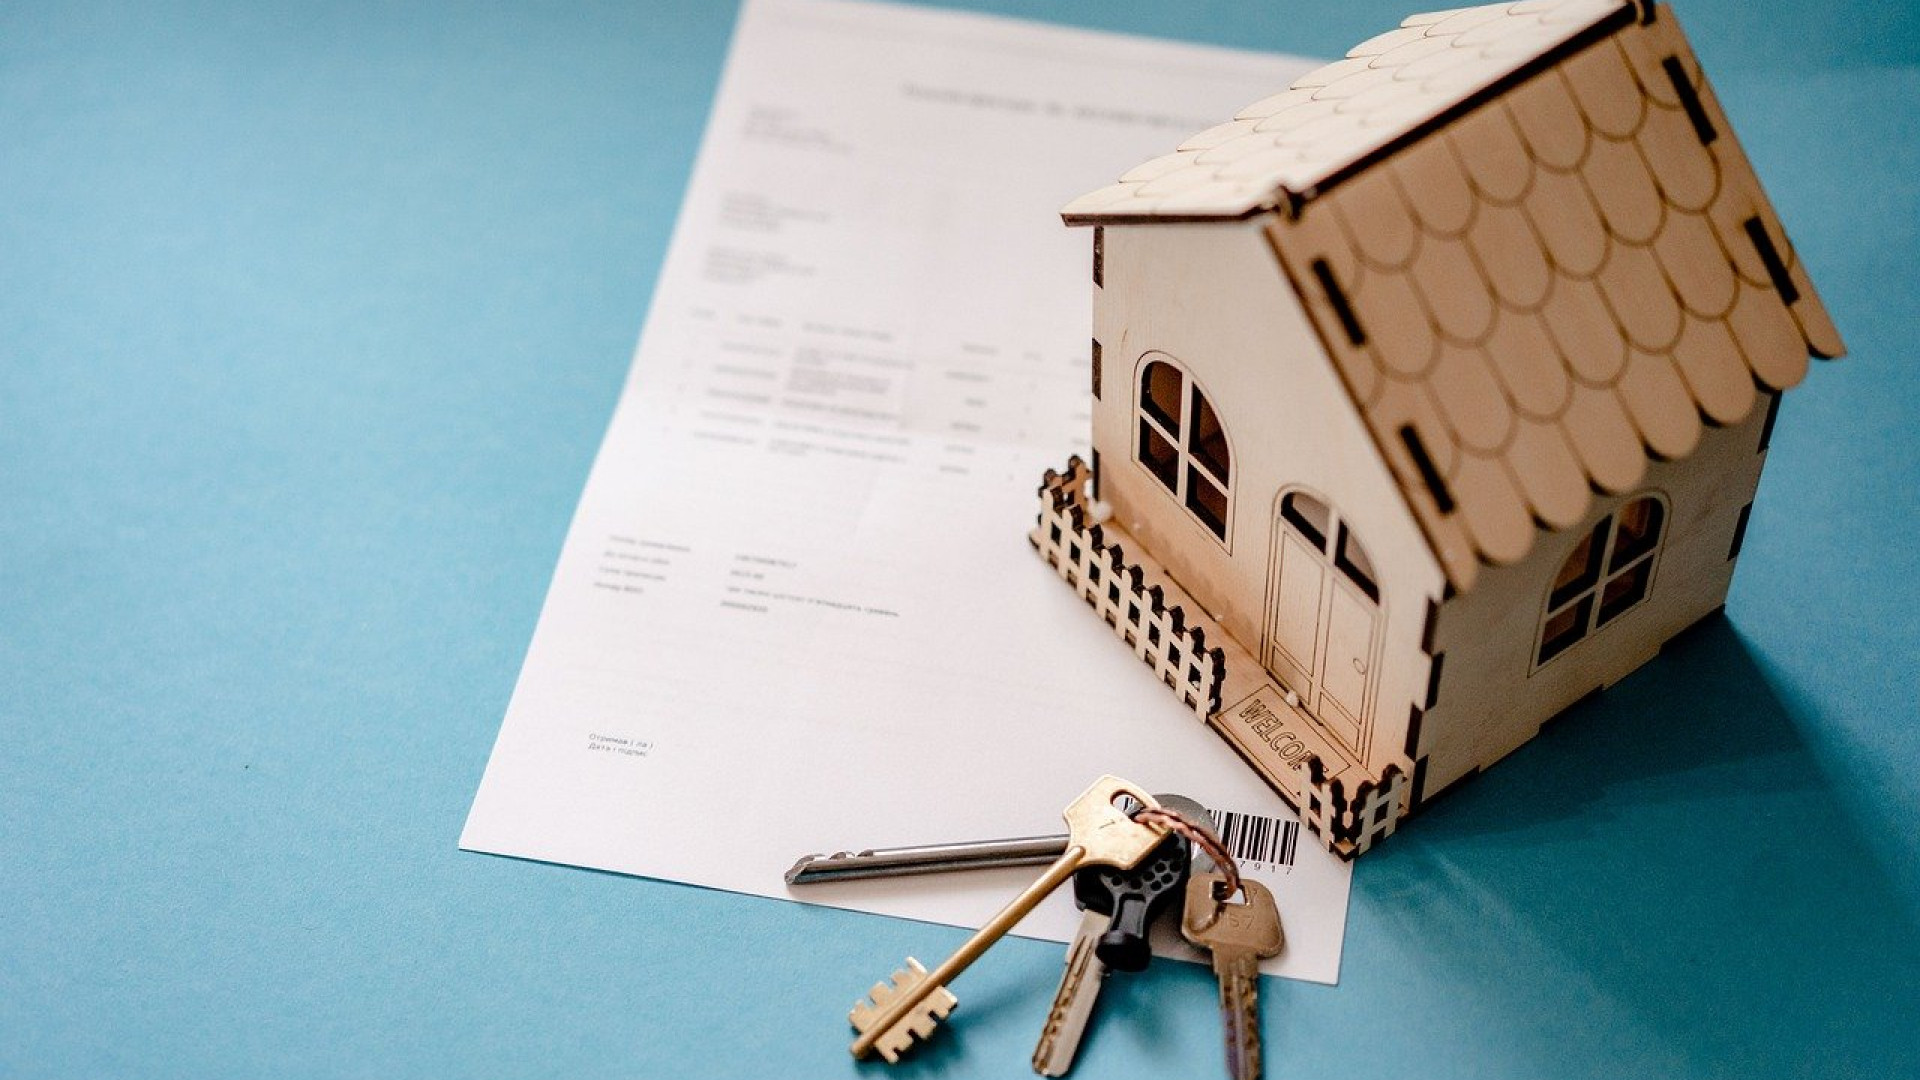 Comment obtenir le meilleur taux pour son crédit immobilier ?